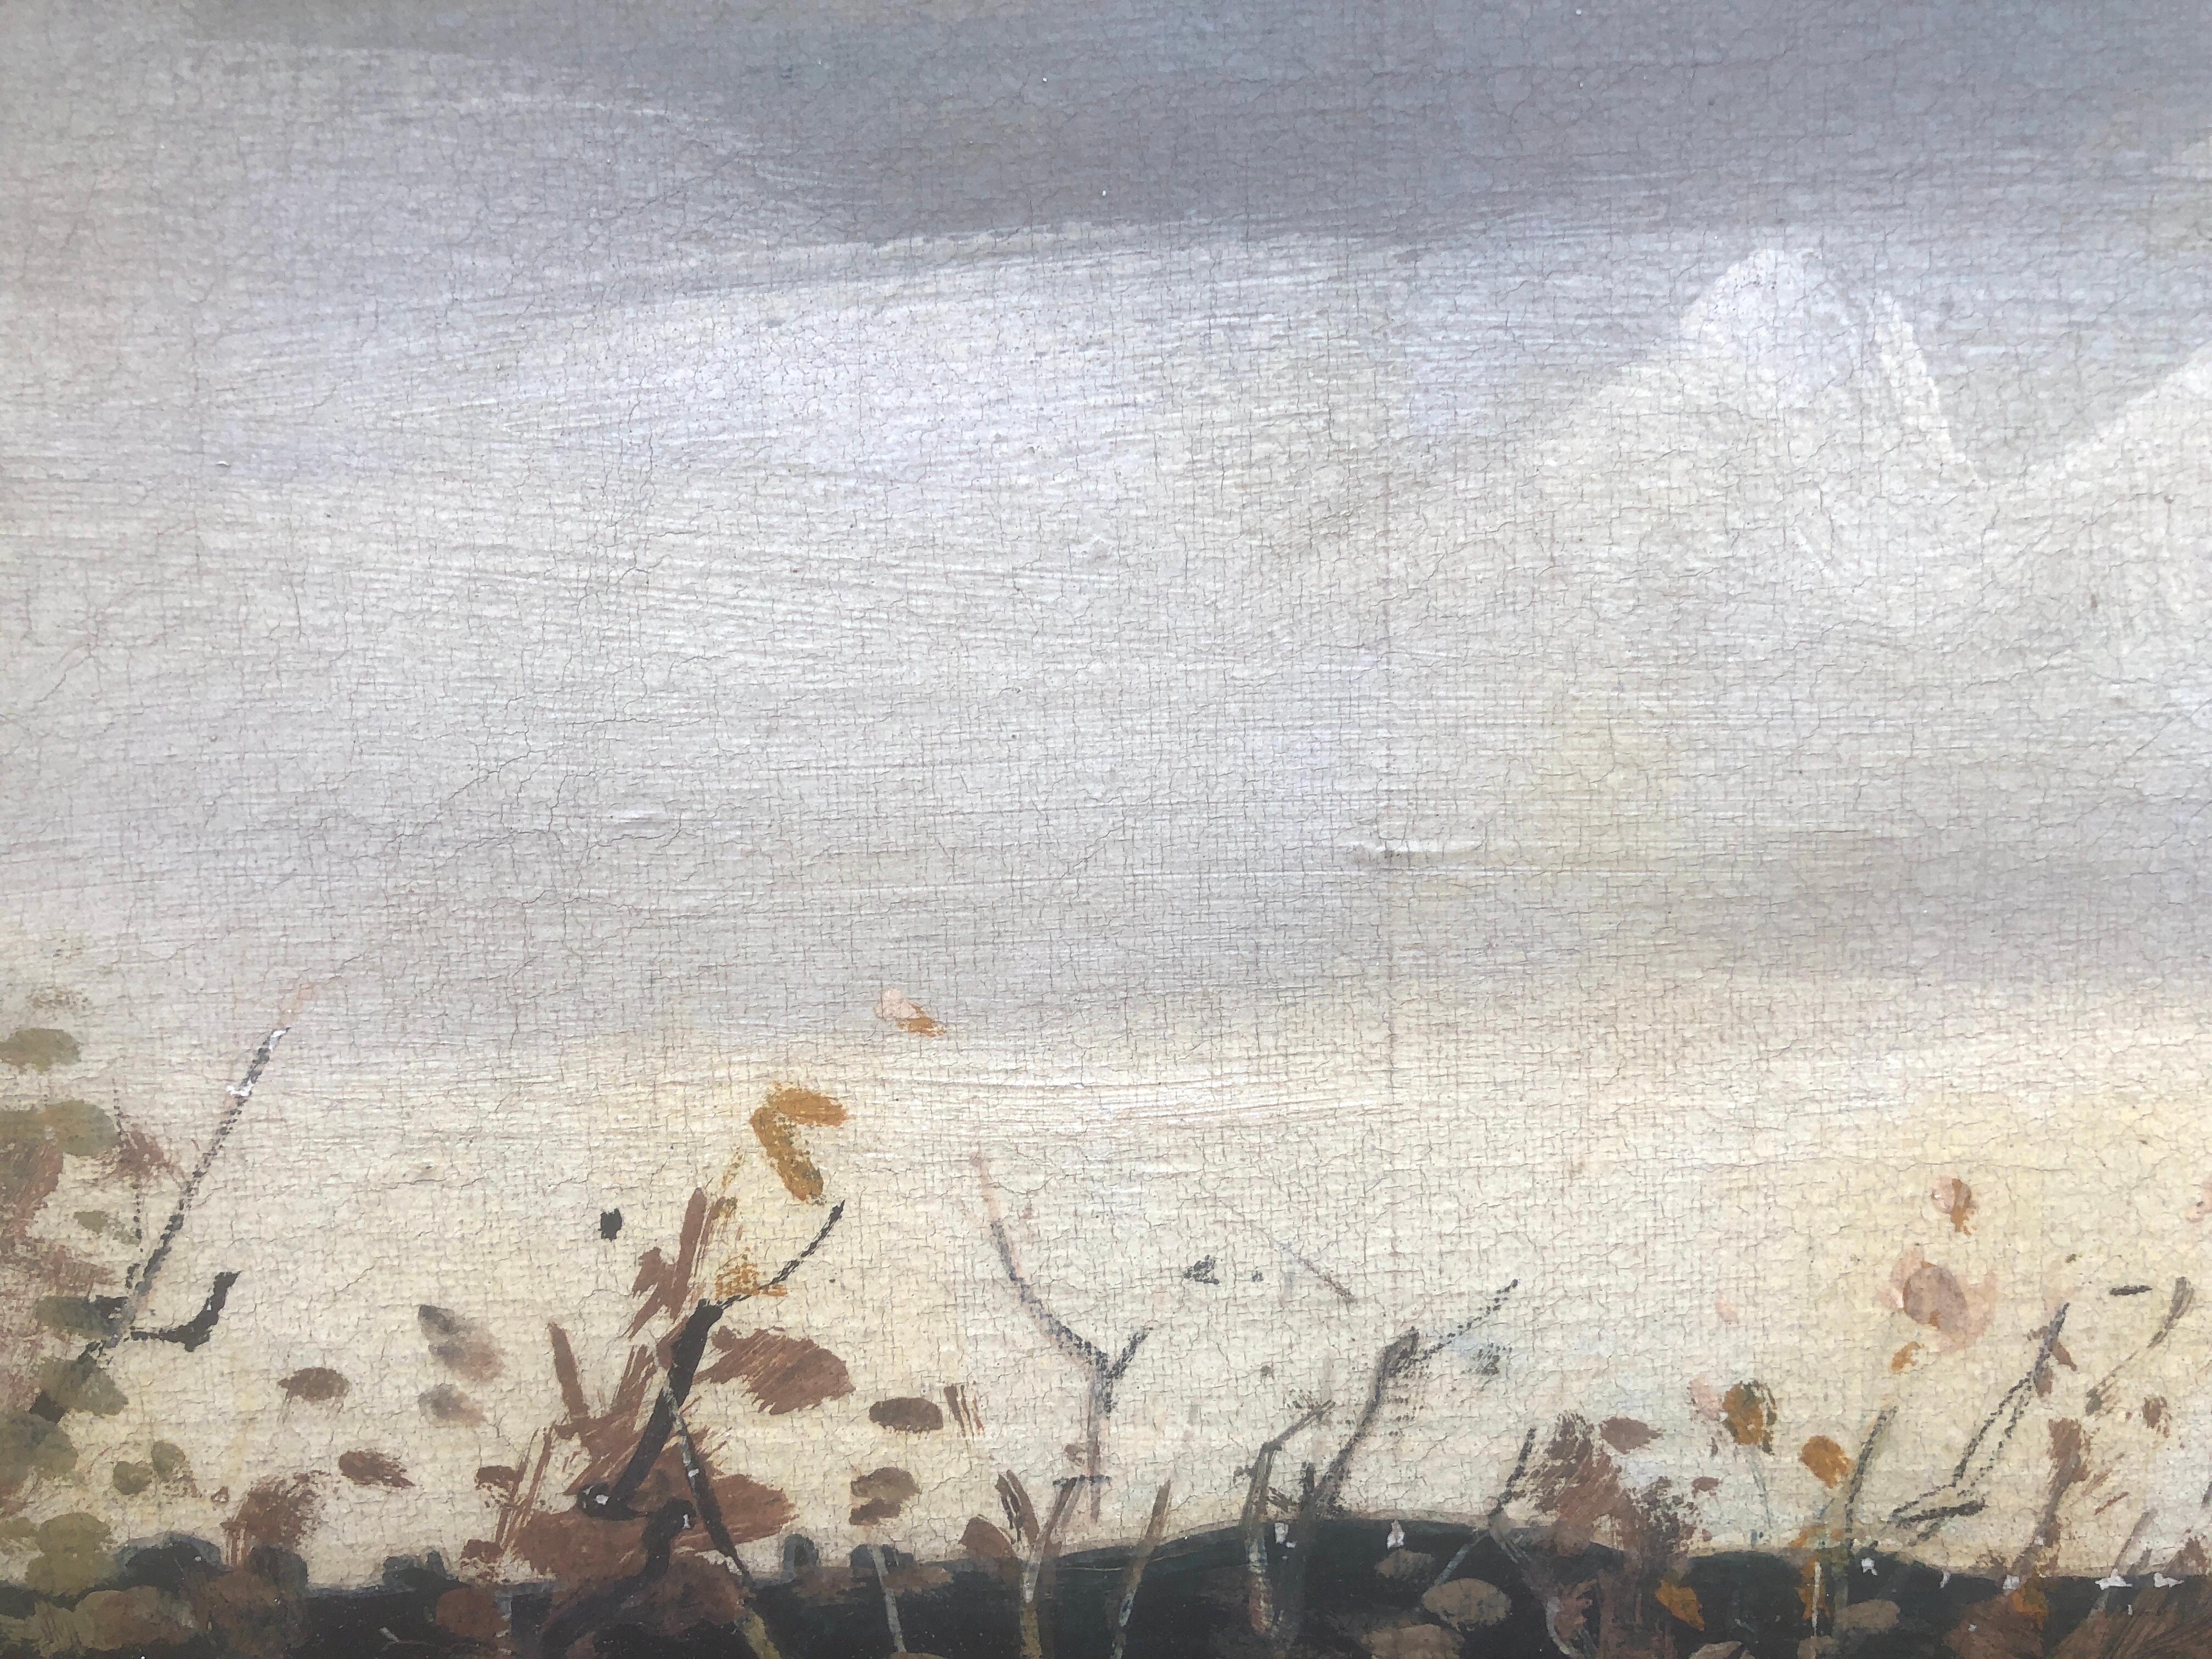 Rafael Durancamps (1891-1979) - Paysage - Huile sur toile
L'huile mesure 38x46 cm.
Le cadre mesure 58x66 cm.

Rafael Durancamps i Folguera (Sabadell, 29 mars 1891 [1] - Barcelone, 4 janvier [2], 1979) était un peintre espagnol.
Il apprend le métier